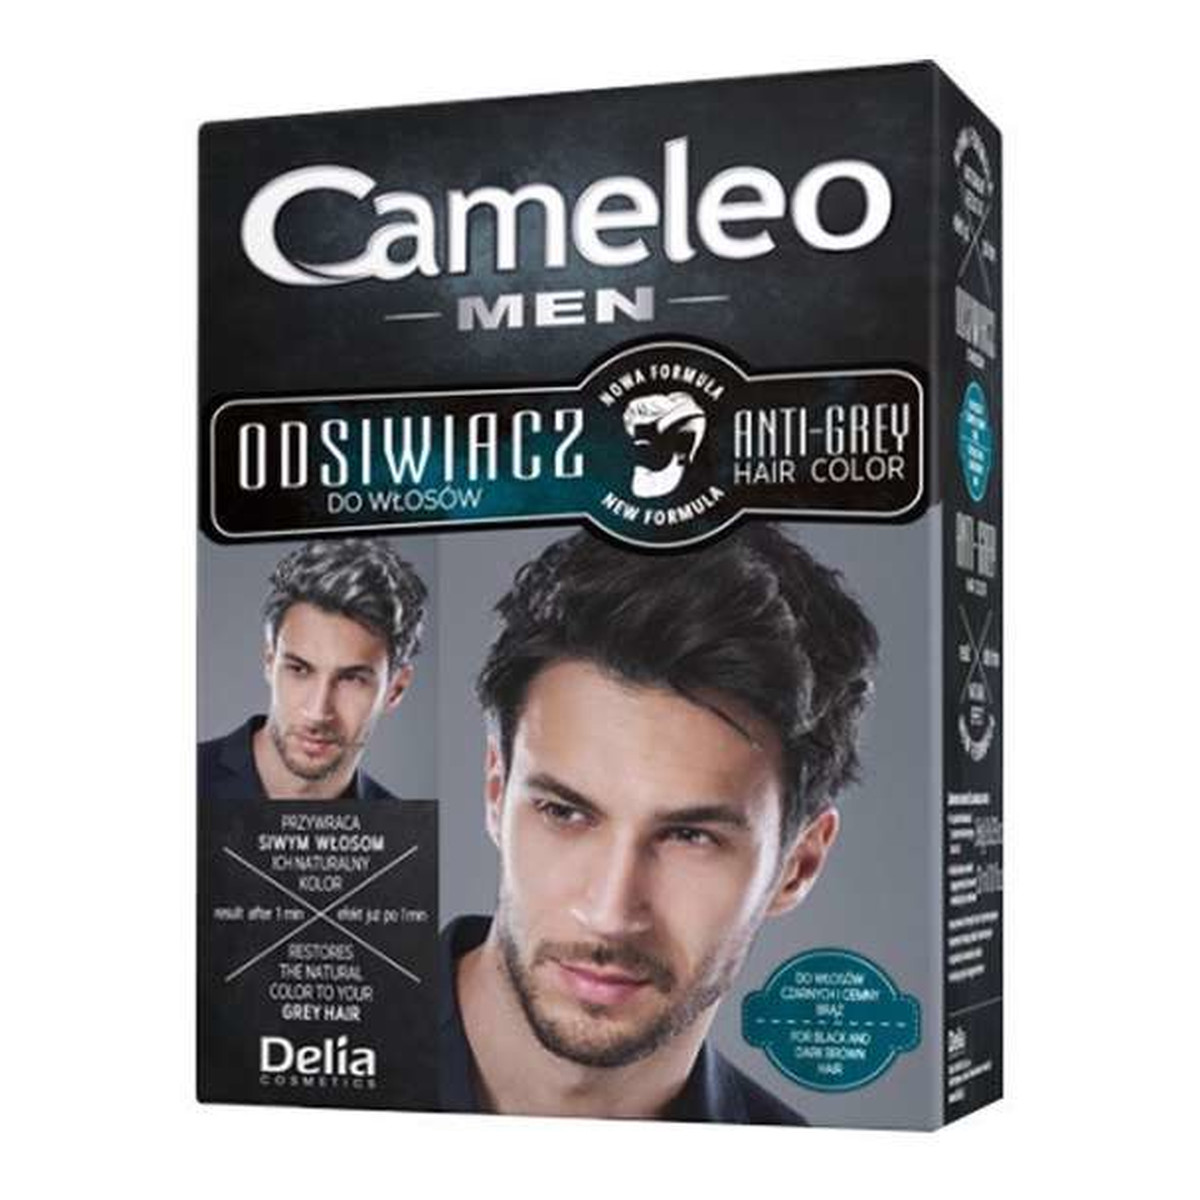 Cameleo Men Odsiwiacz Dla Mężczyzn Anti-Grey Hair Color